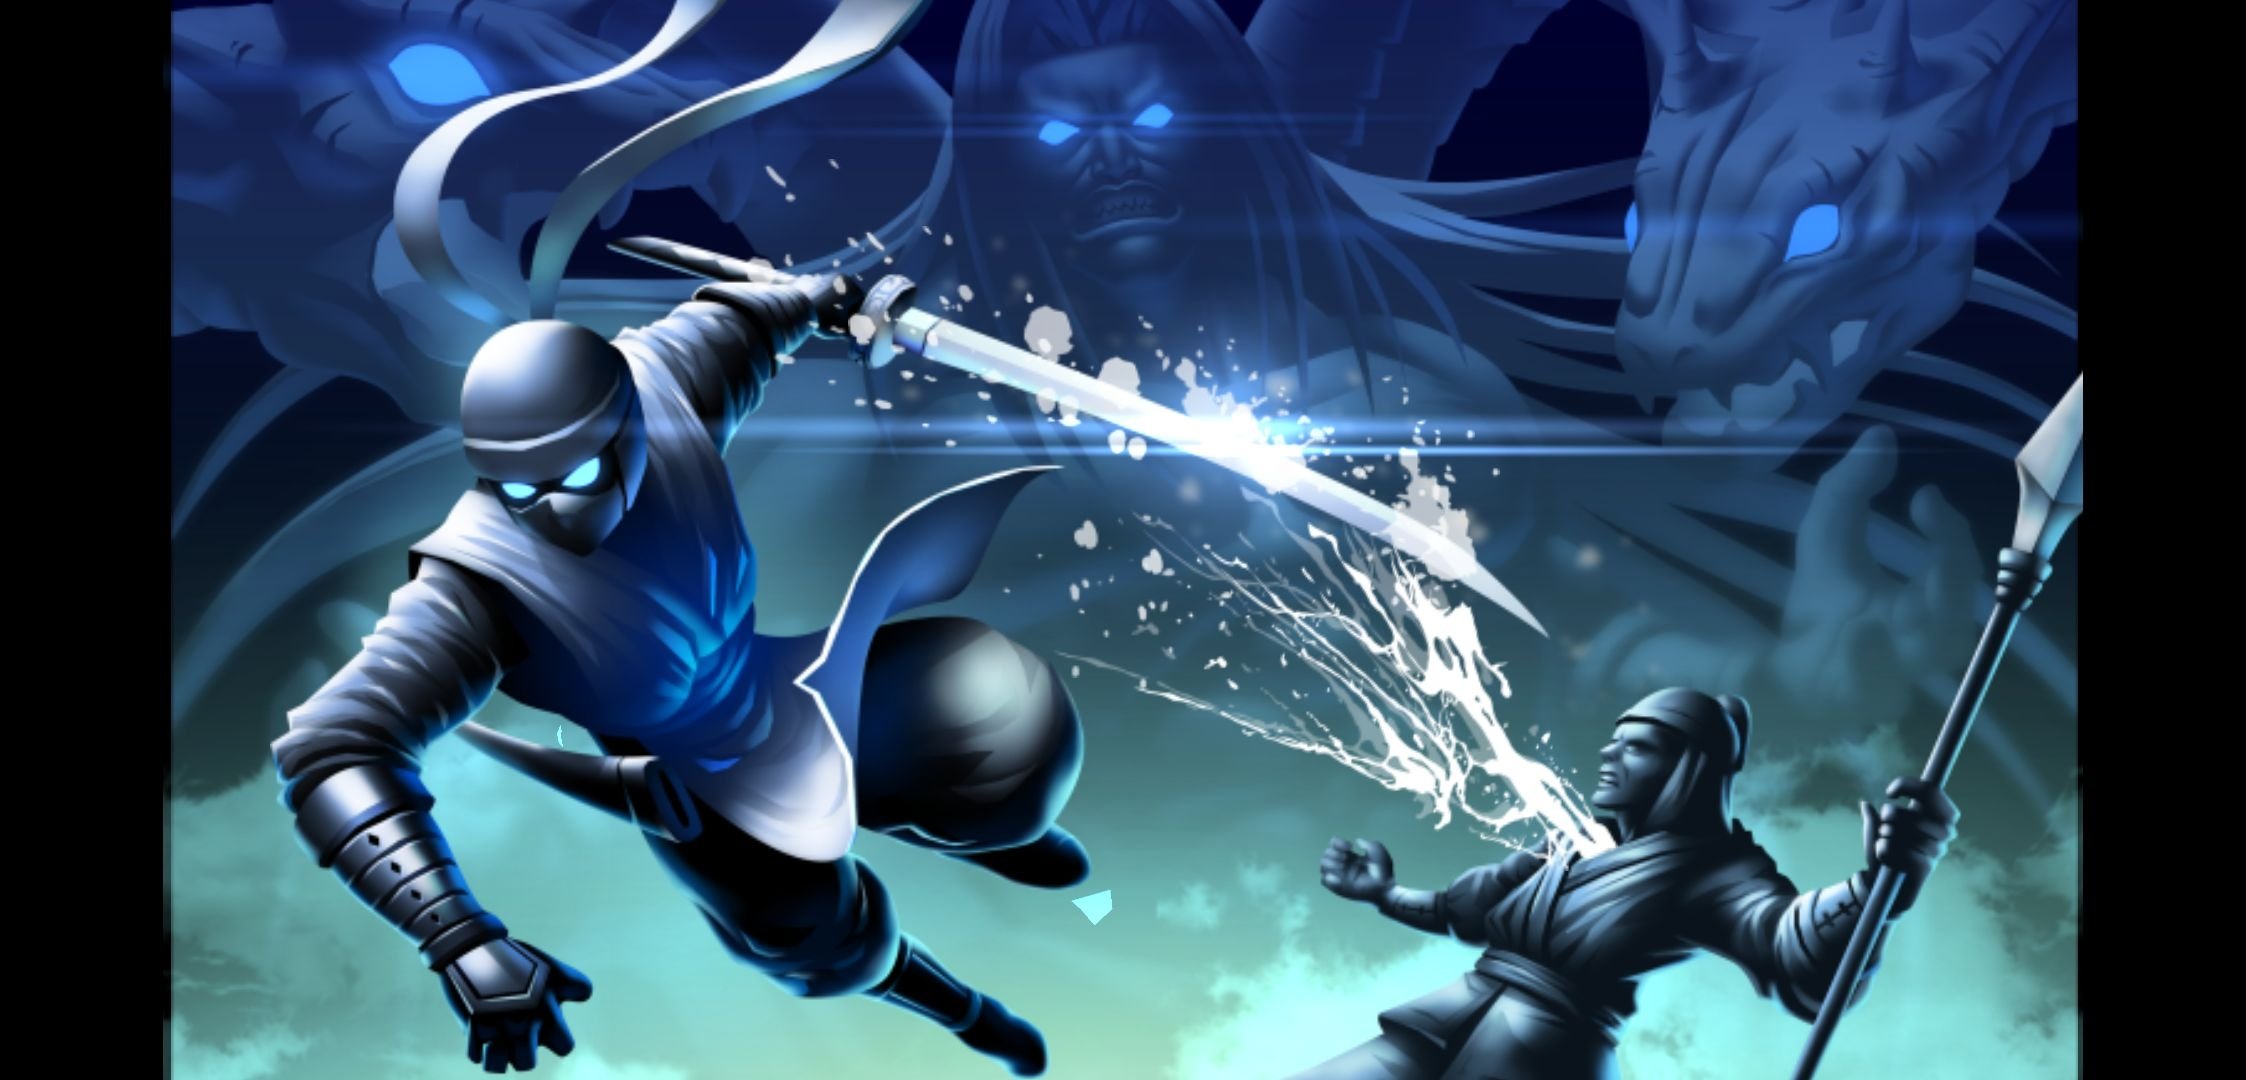 ninja warrior video game